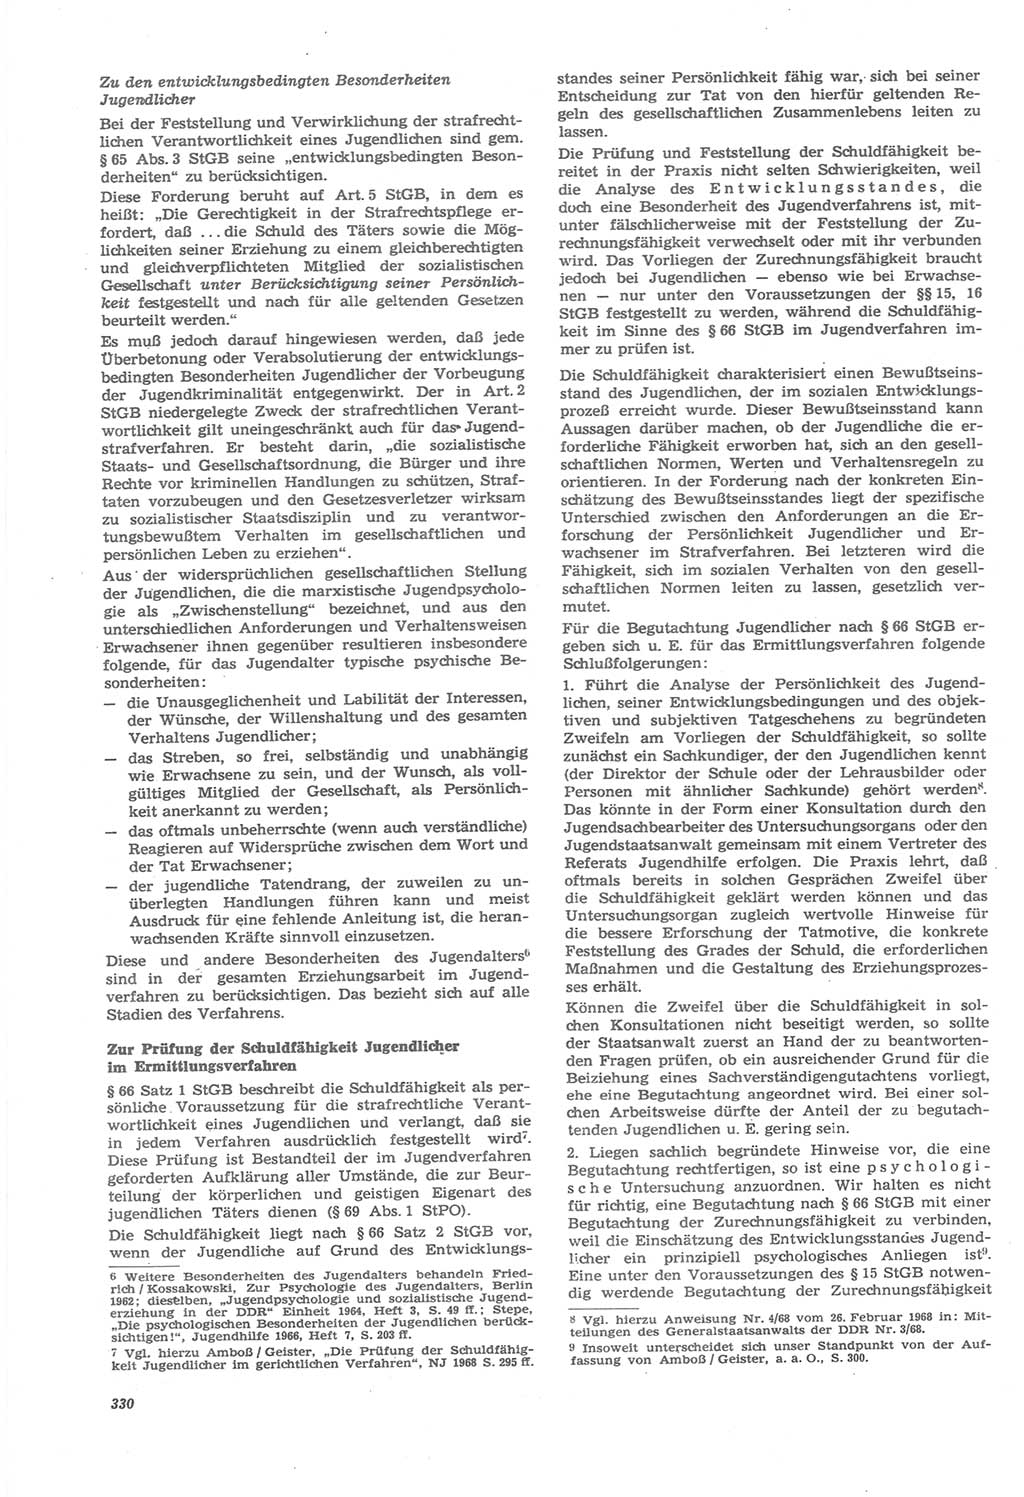 Neue Justiz (NJ), Zeitschrift für Recht und Rechtswissenschaft [Deutsche Demokratische Republik (DDR)], 22. Jahrgang 1968, Seite 330 (NJ DDR 1968, S. 330)